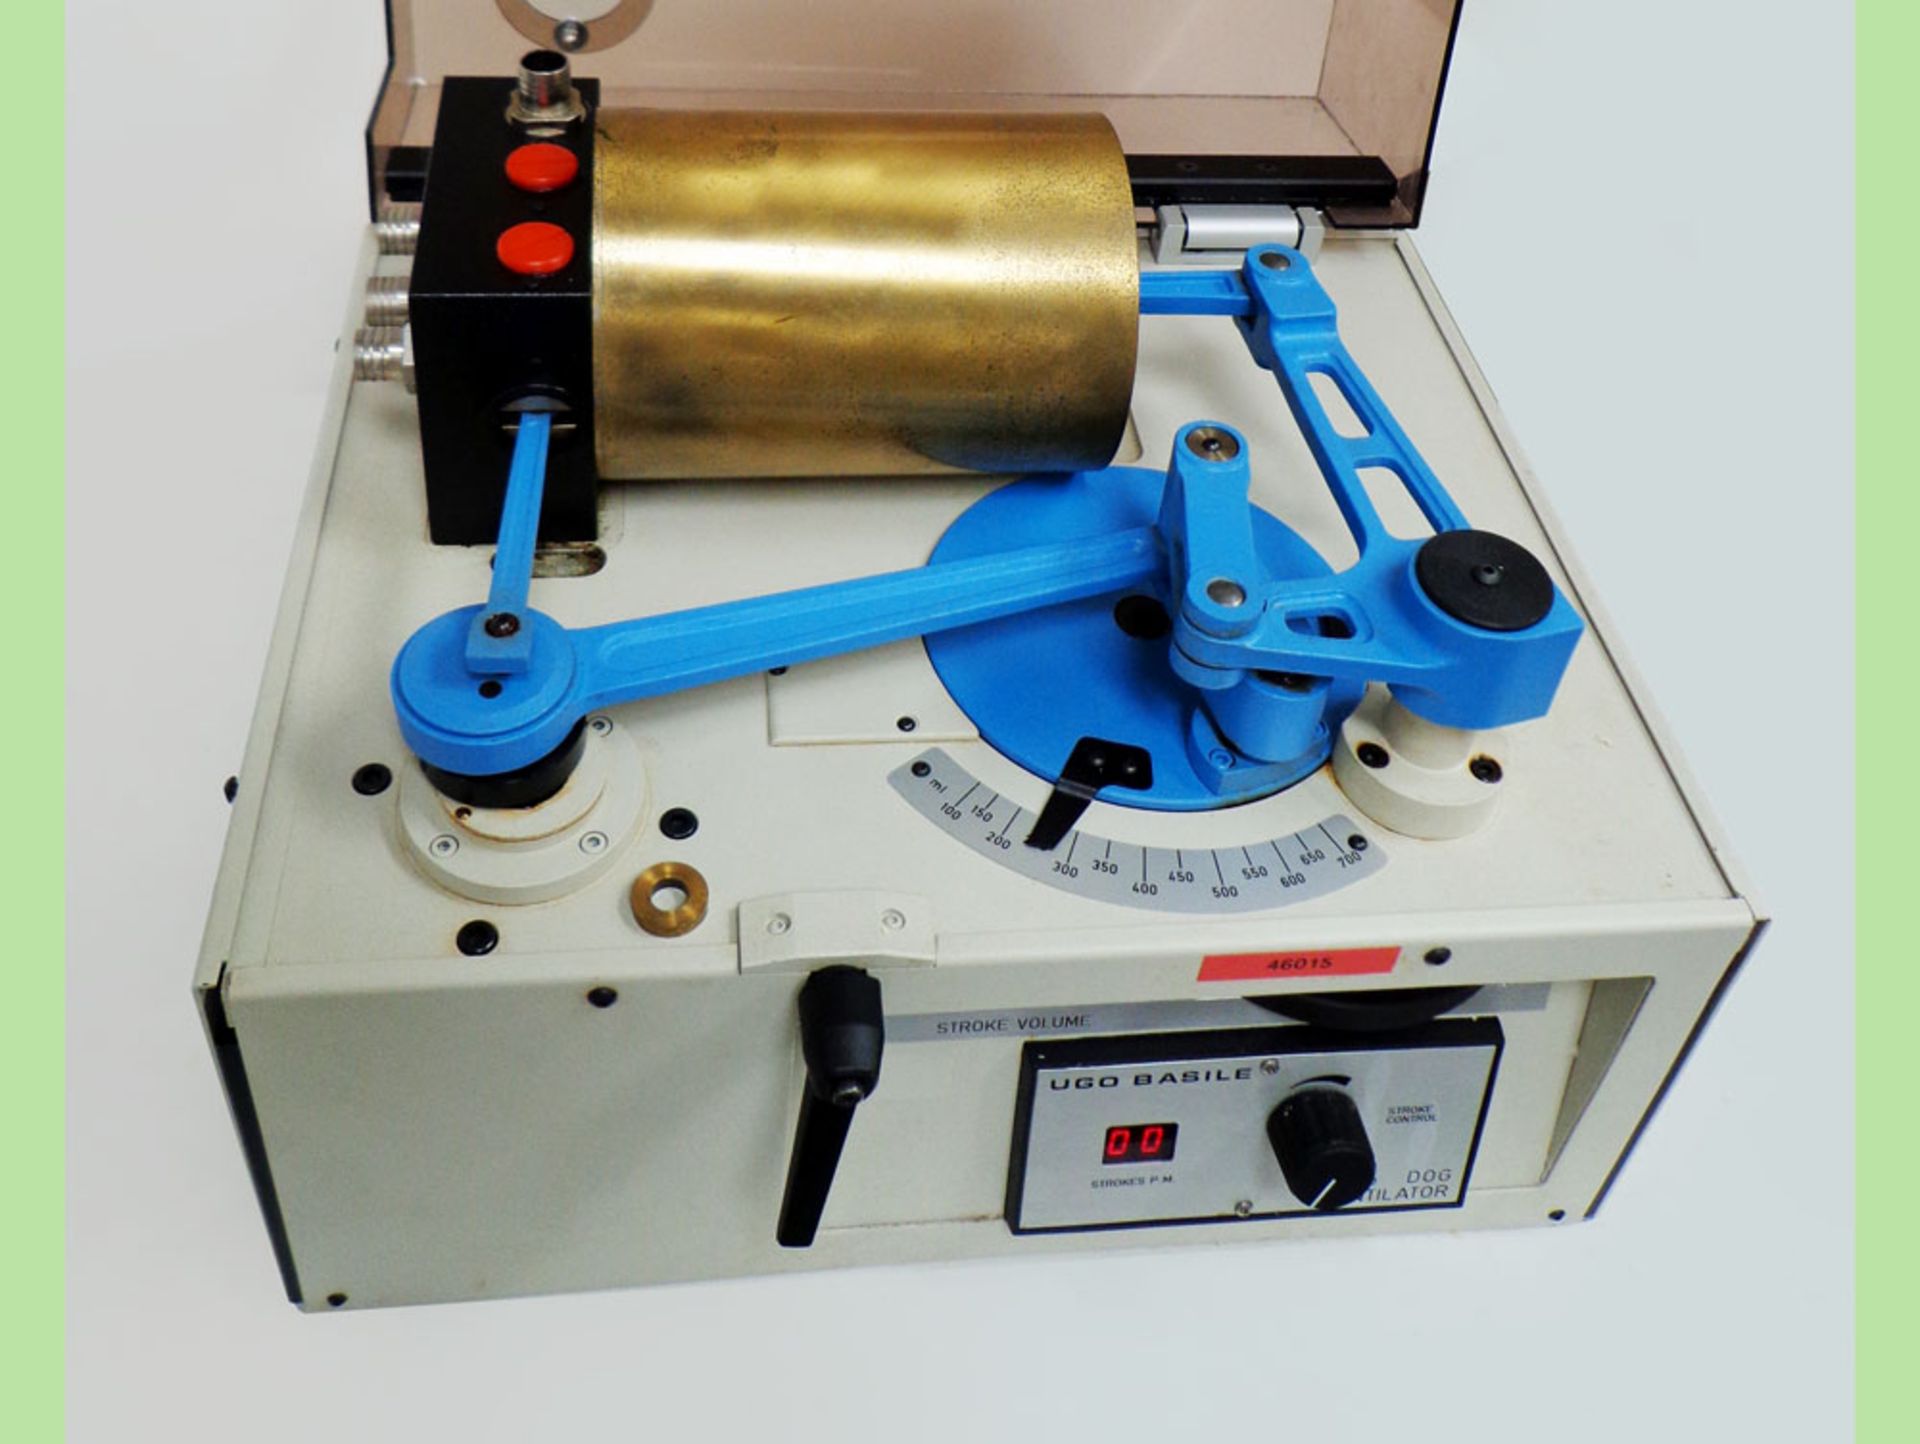 UGO Basile 5025 Dog Ventilator, 700 ml cylinder/ piston, S/N 51193 - Image 3 of 7